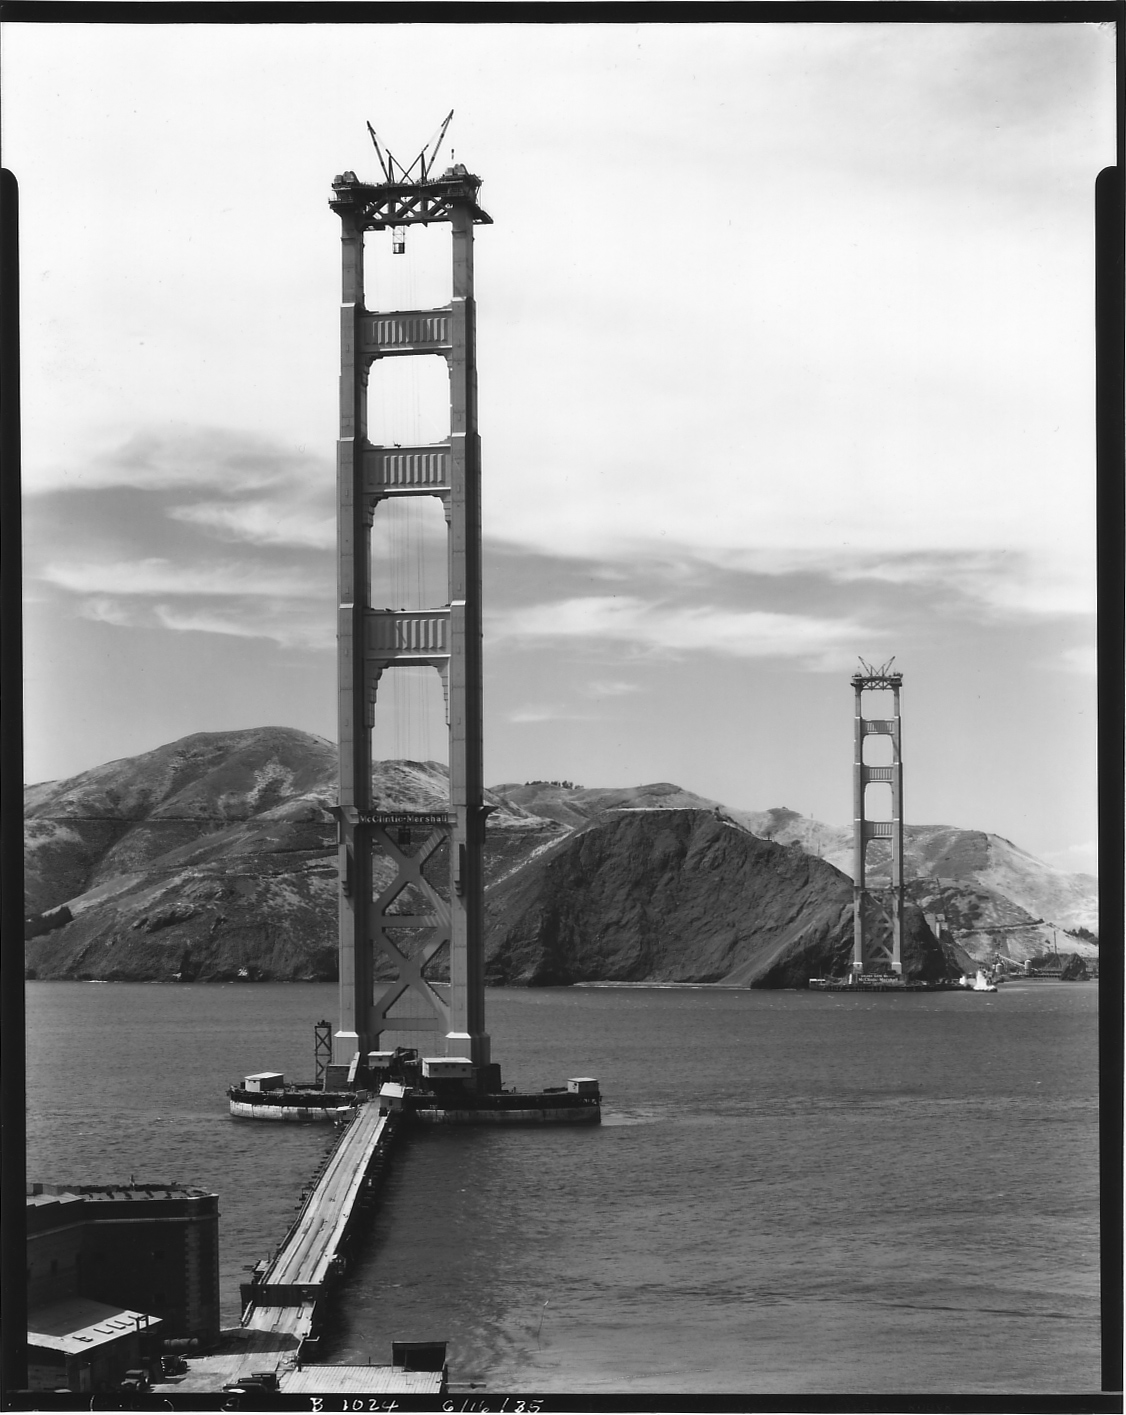 La construction du Golden Gate Bridge de San Francisco – La boite verte